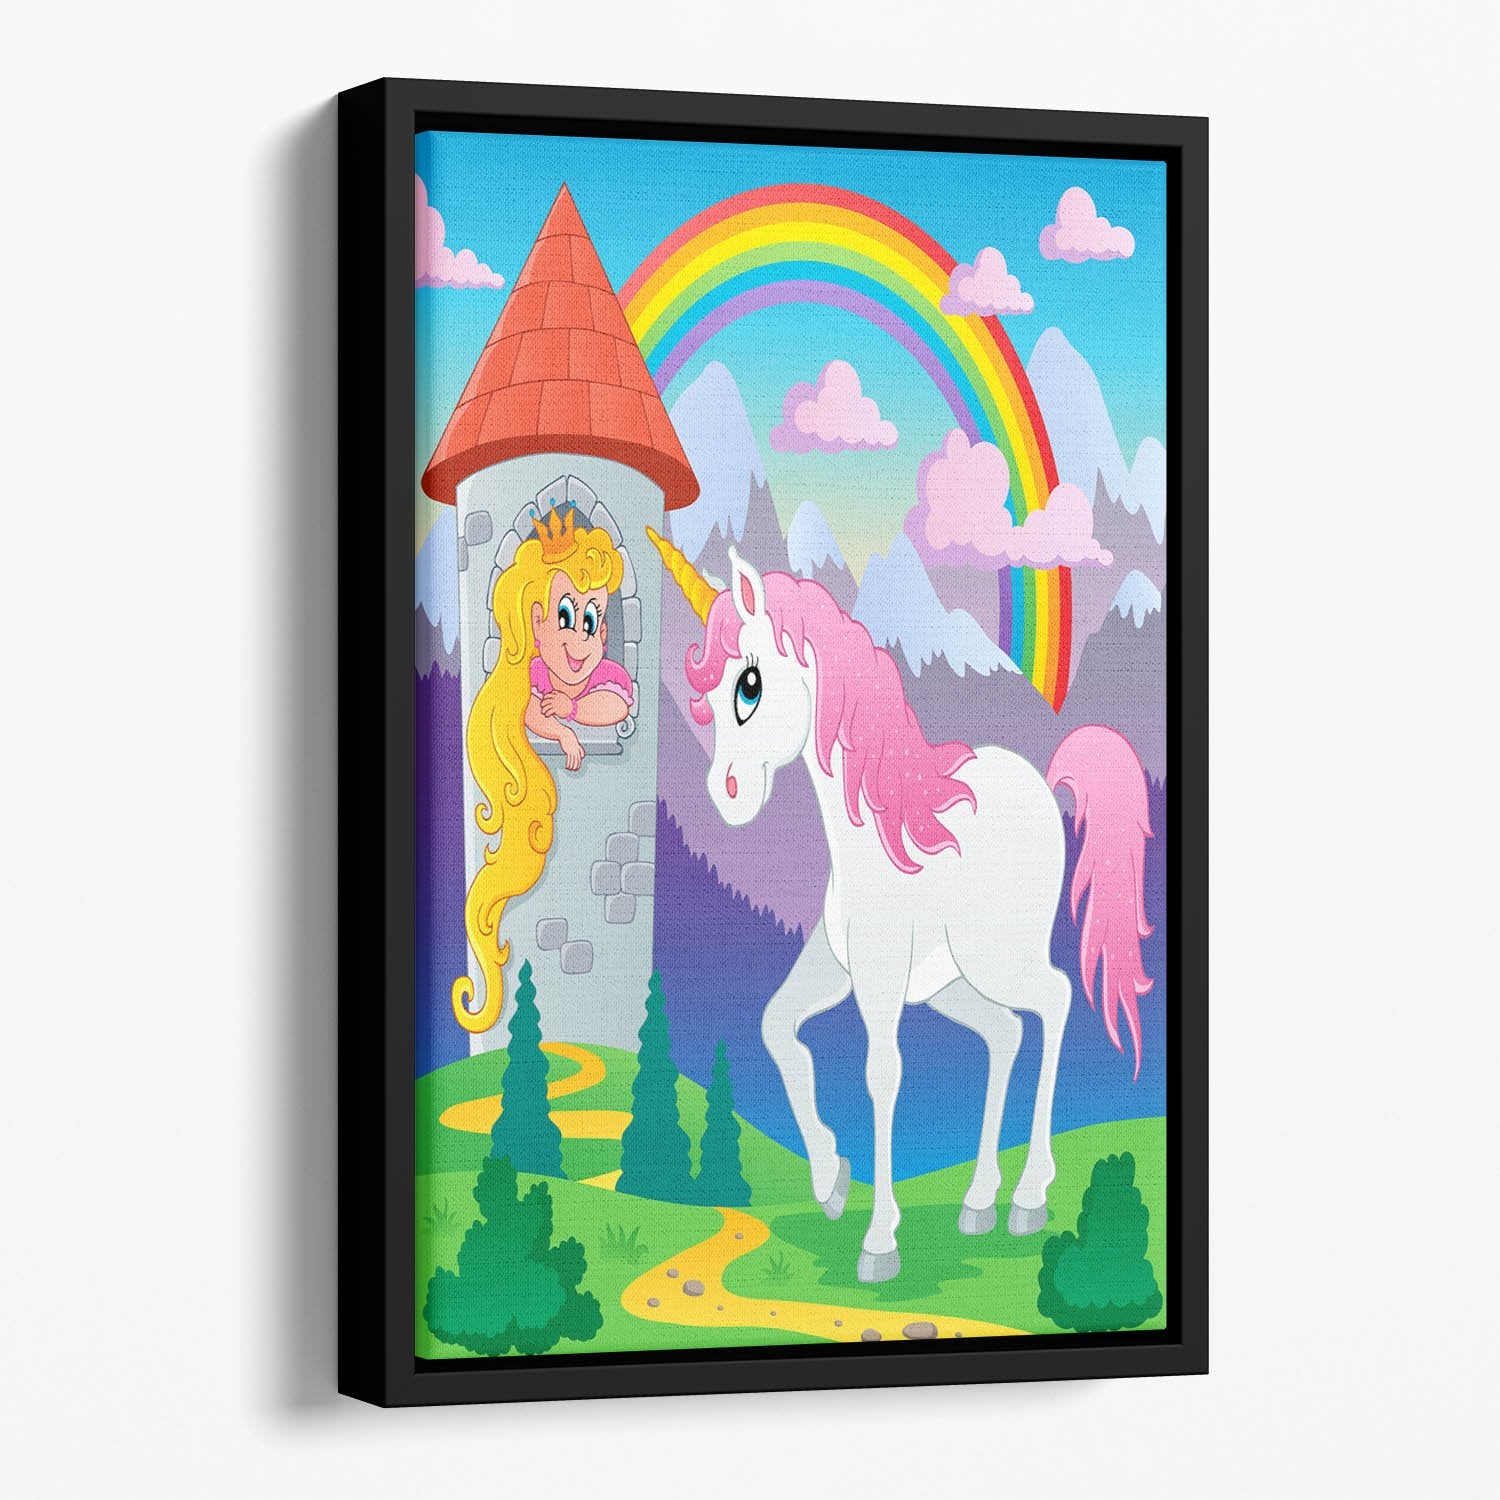 Fairy tale unicorn theme Floating Framed Canvas